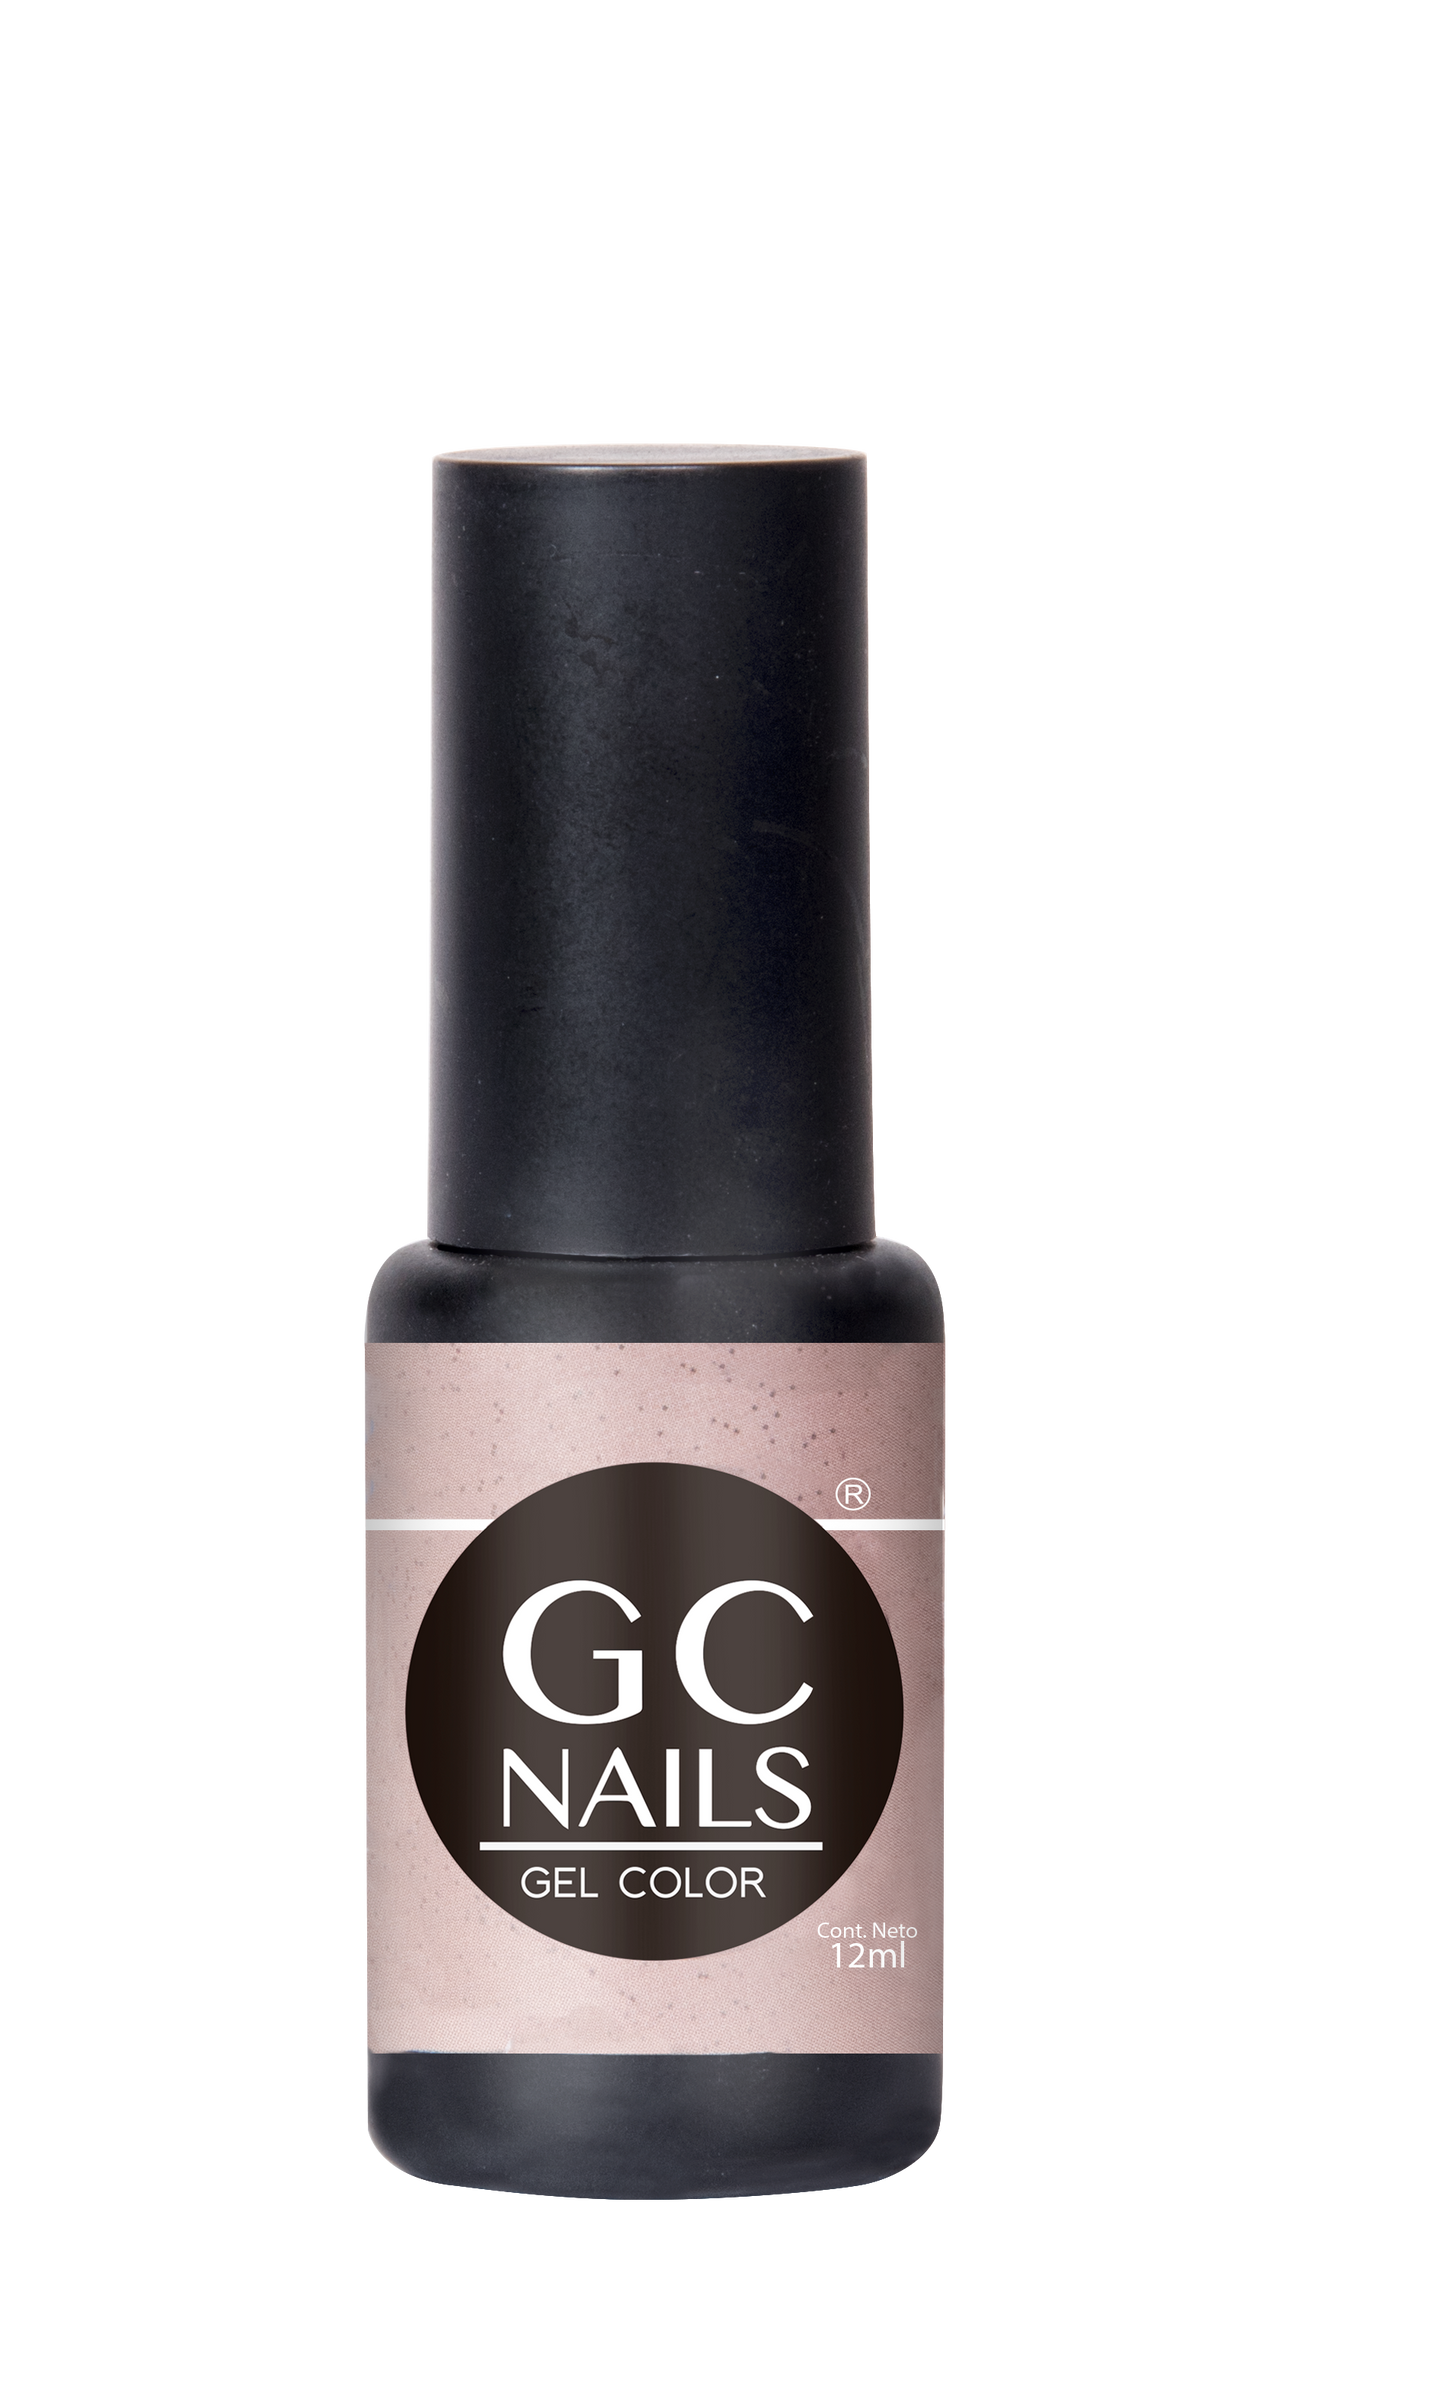 GC nails bel-color 12ml  91 PIMIENTA